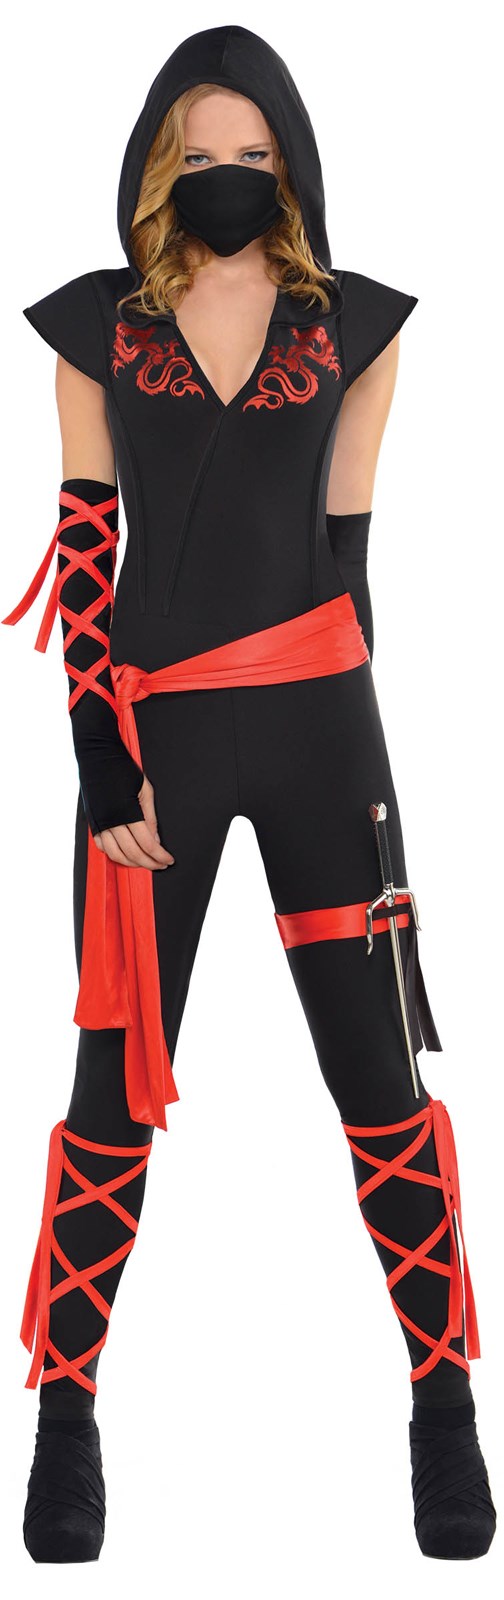 Dragon Fighter Ninja Costume For Women